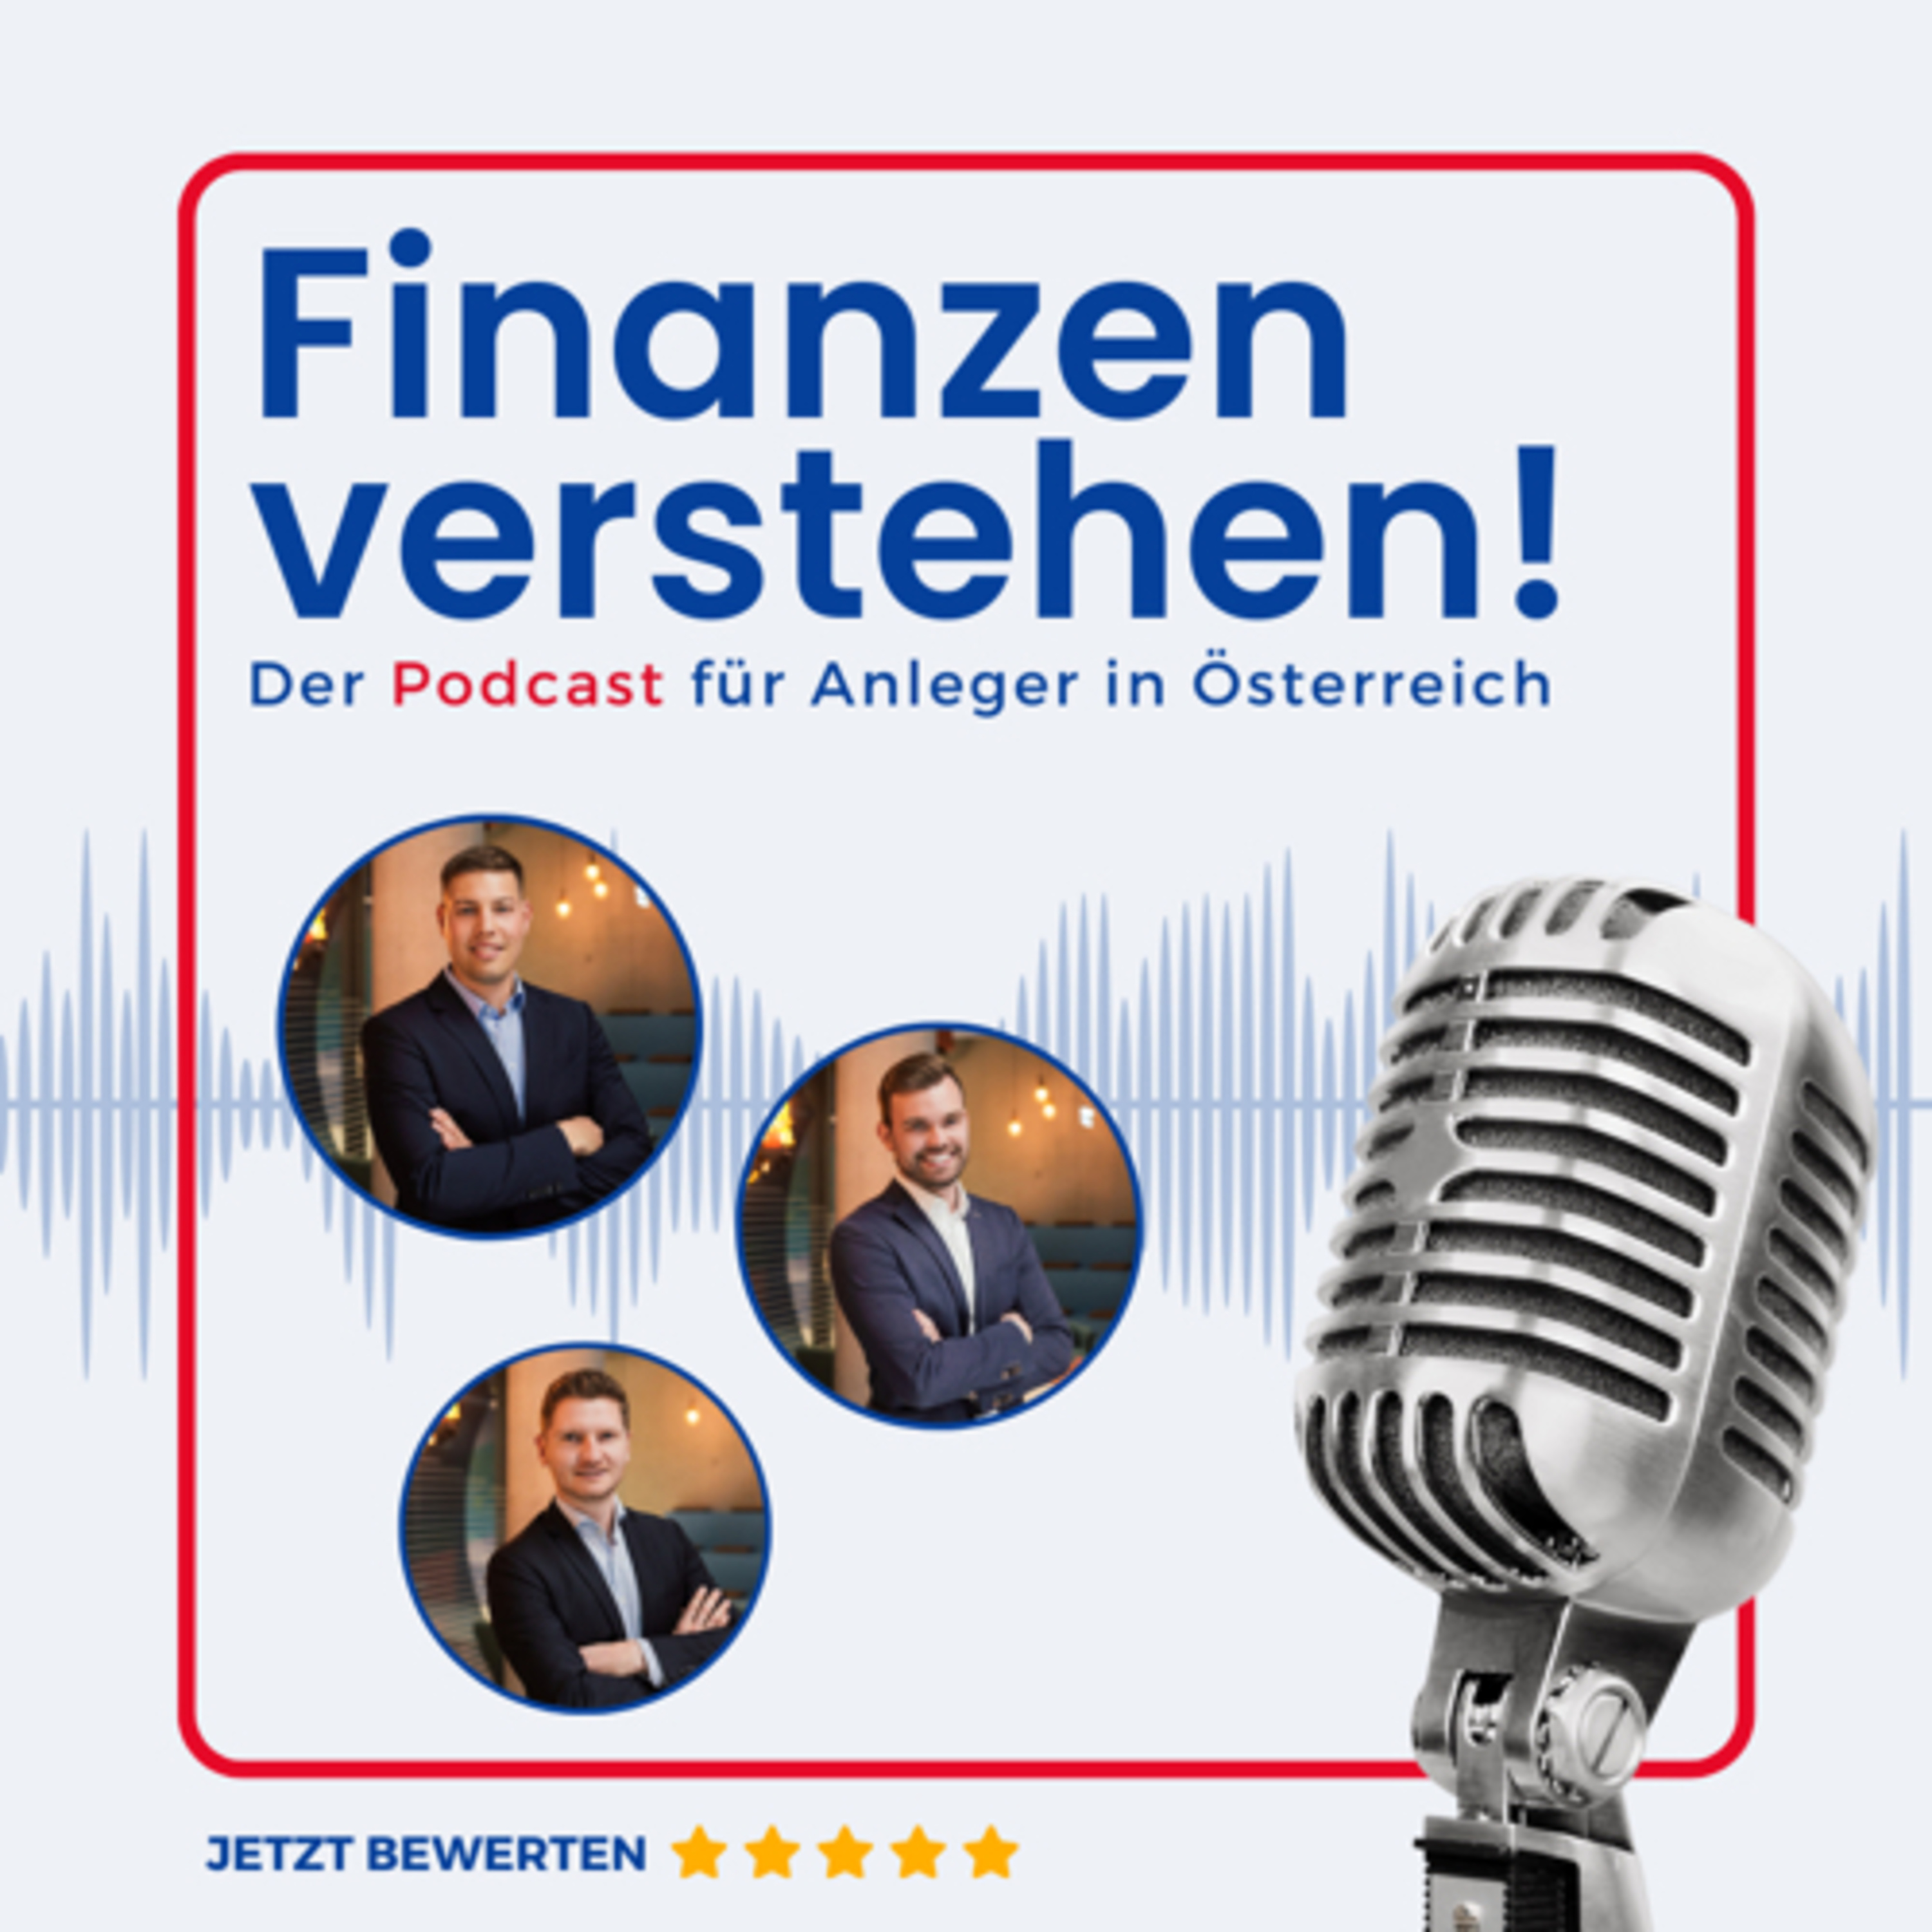 (#27) Österreich als Investmentland nicht uninteressant! - Philipp Genduth, finanzenverstehen.at